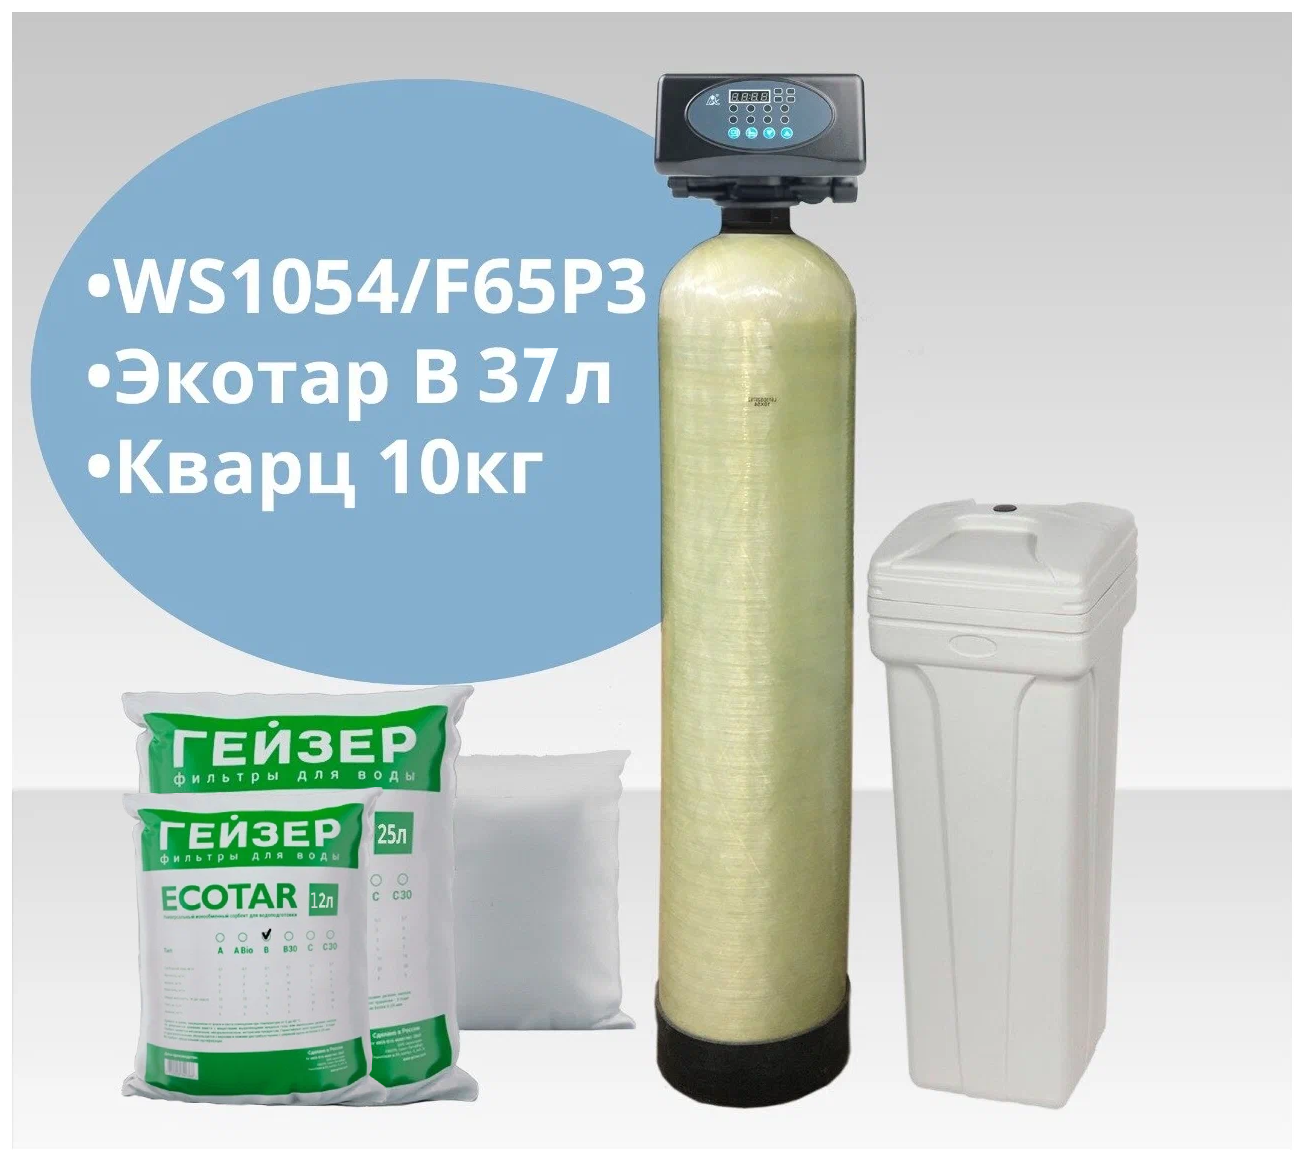 Установка WS1054/F65P3-A (Экотар В) обезжелезивание и умягчение воды